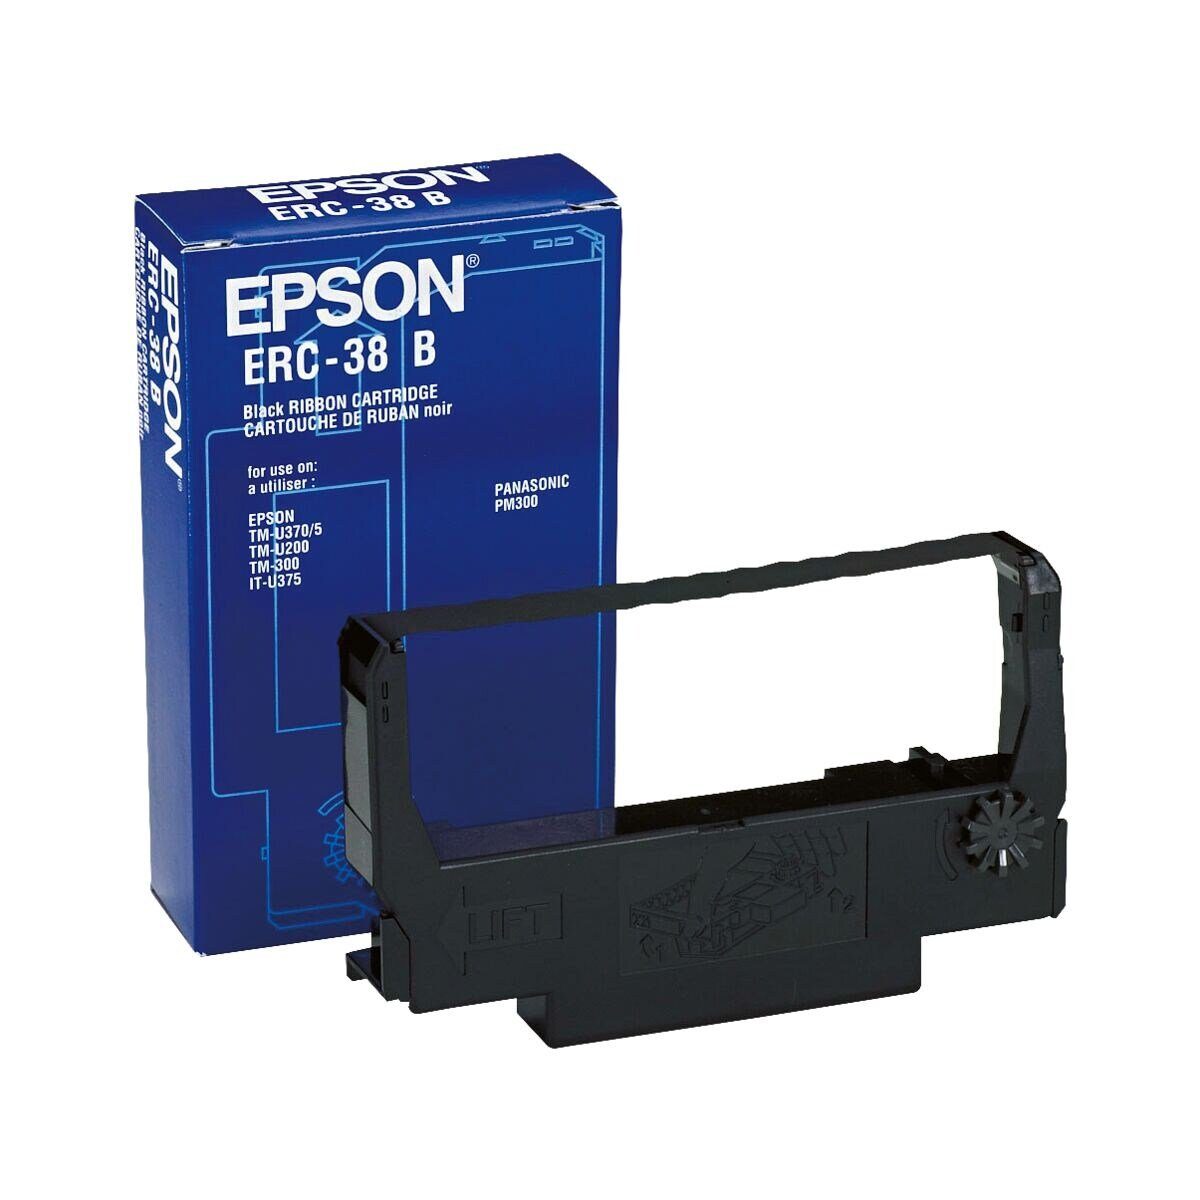 Epson Druckerband ERC-38B, schwarz Kassensysteme, für